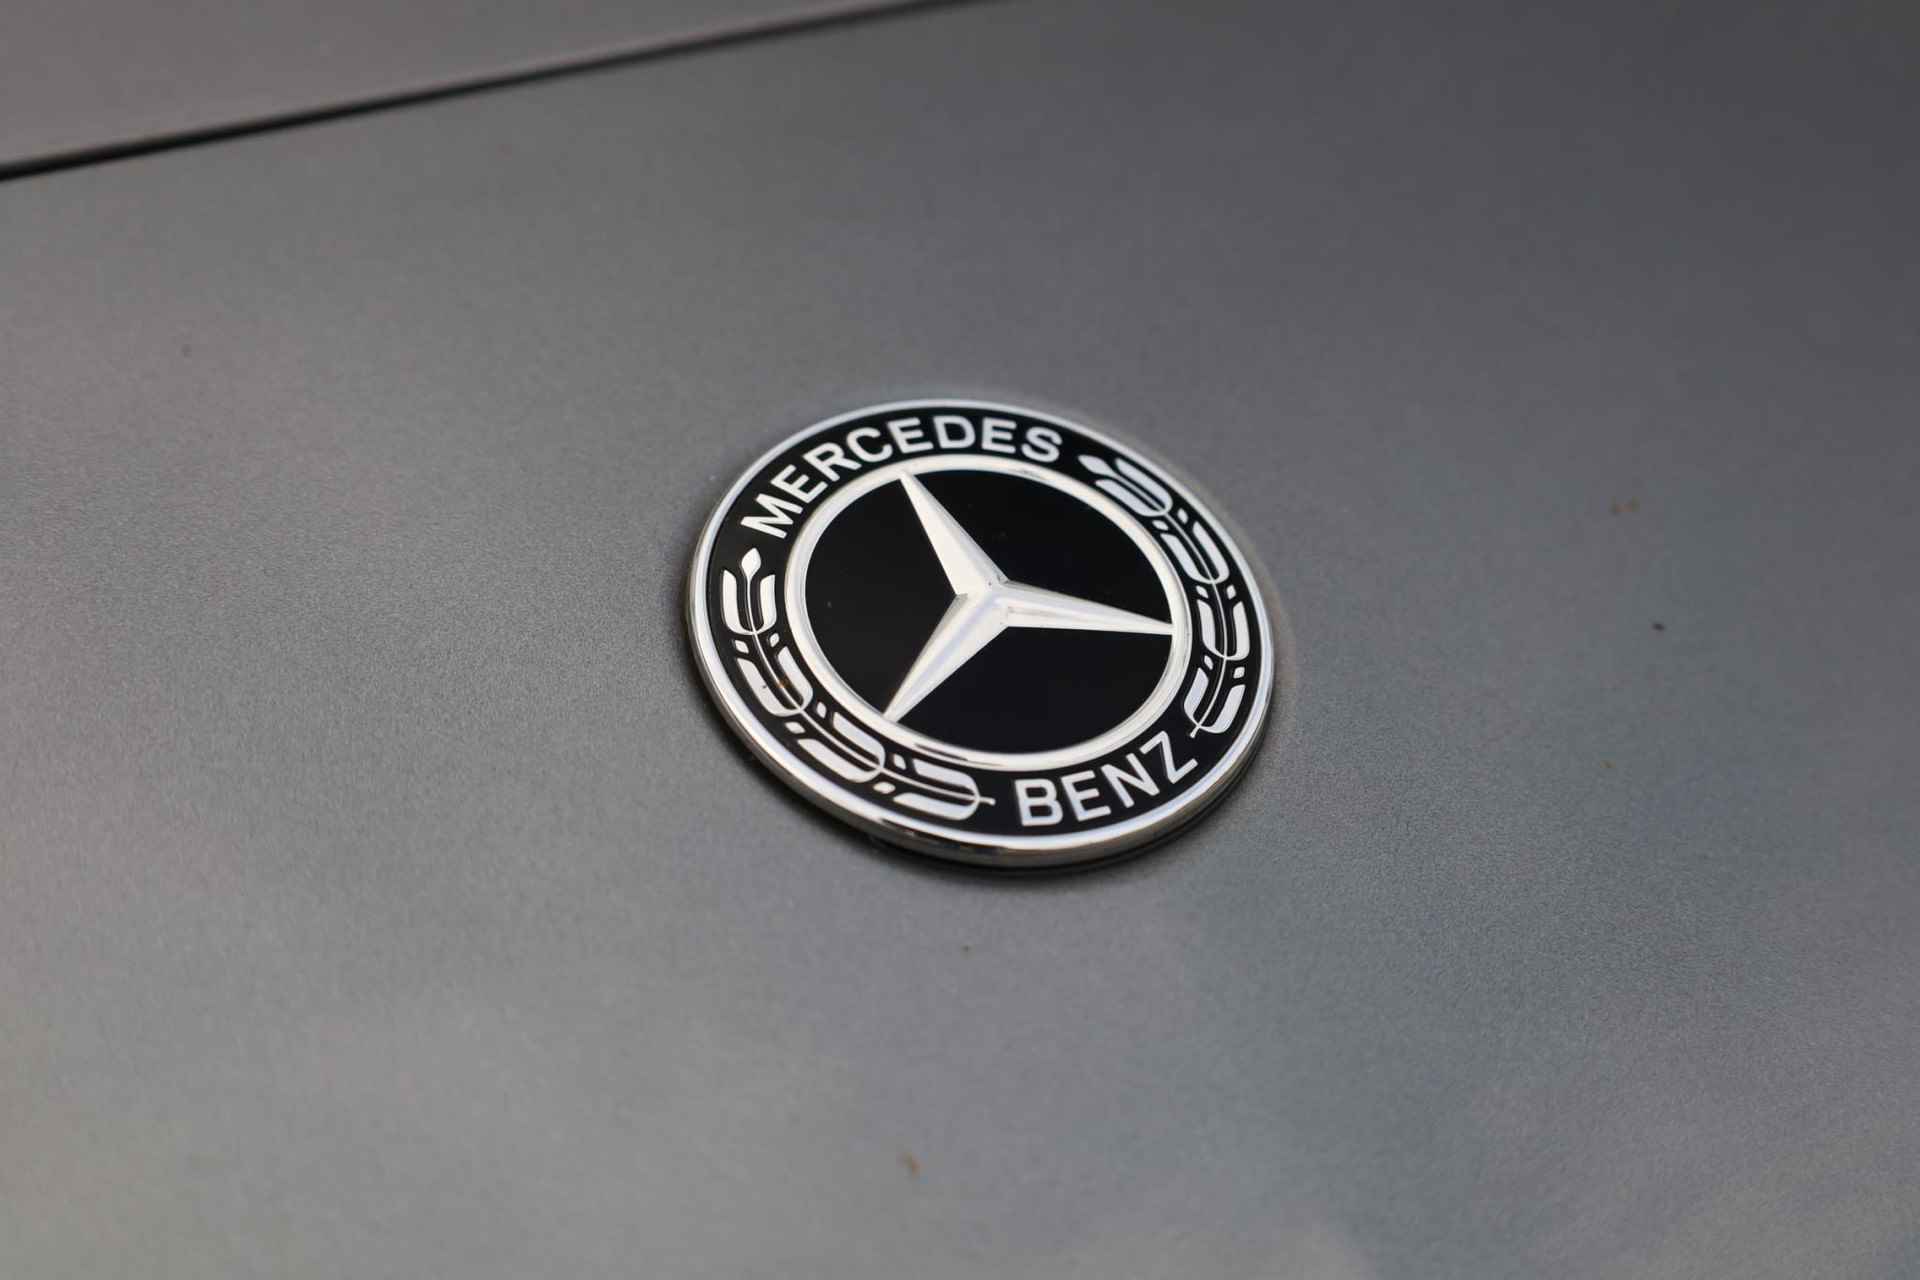 Mercedes-Benz A-klasse 200 Business Solution AMG 163PK / 120kW automaat, Leder / alcantara, winterset LMV, digitaal dashboard, navigatie, LED verlichting voor en achter, 18" LMV, stoelverwarming, parkeersensoren voor en achter, AMG bumpers - 9/44